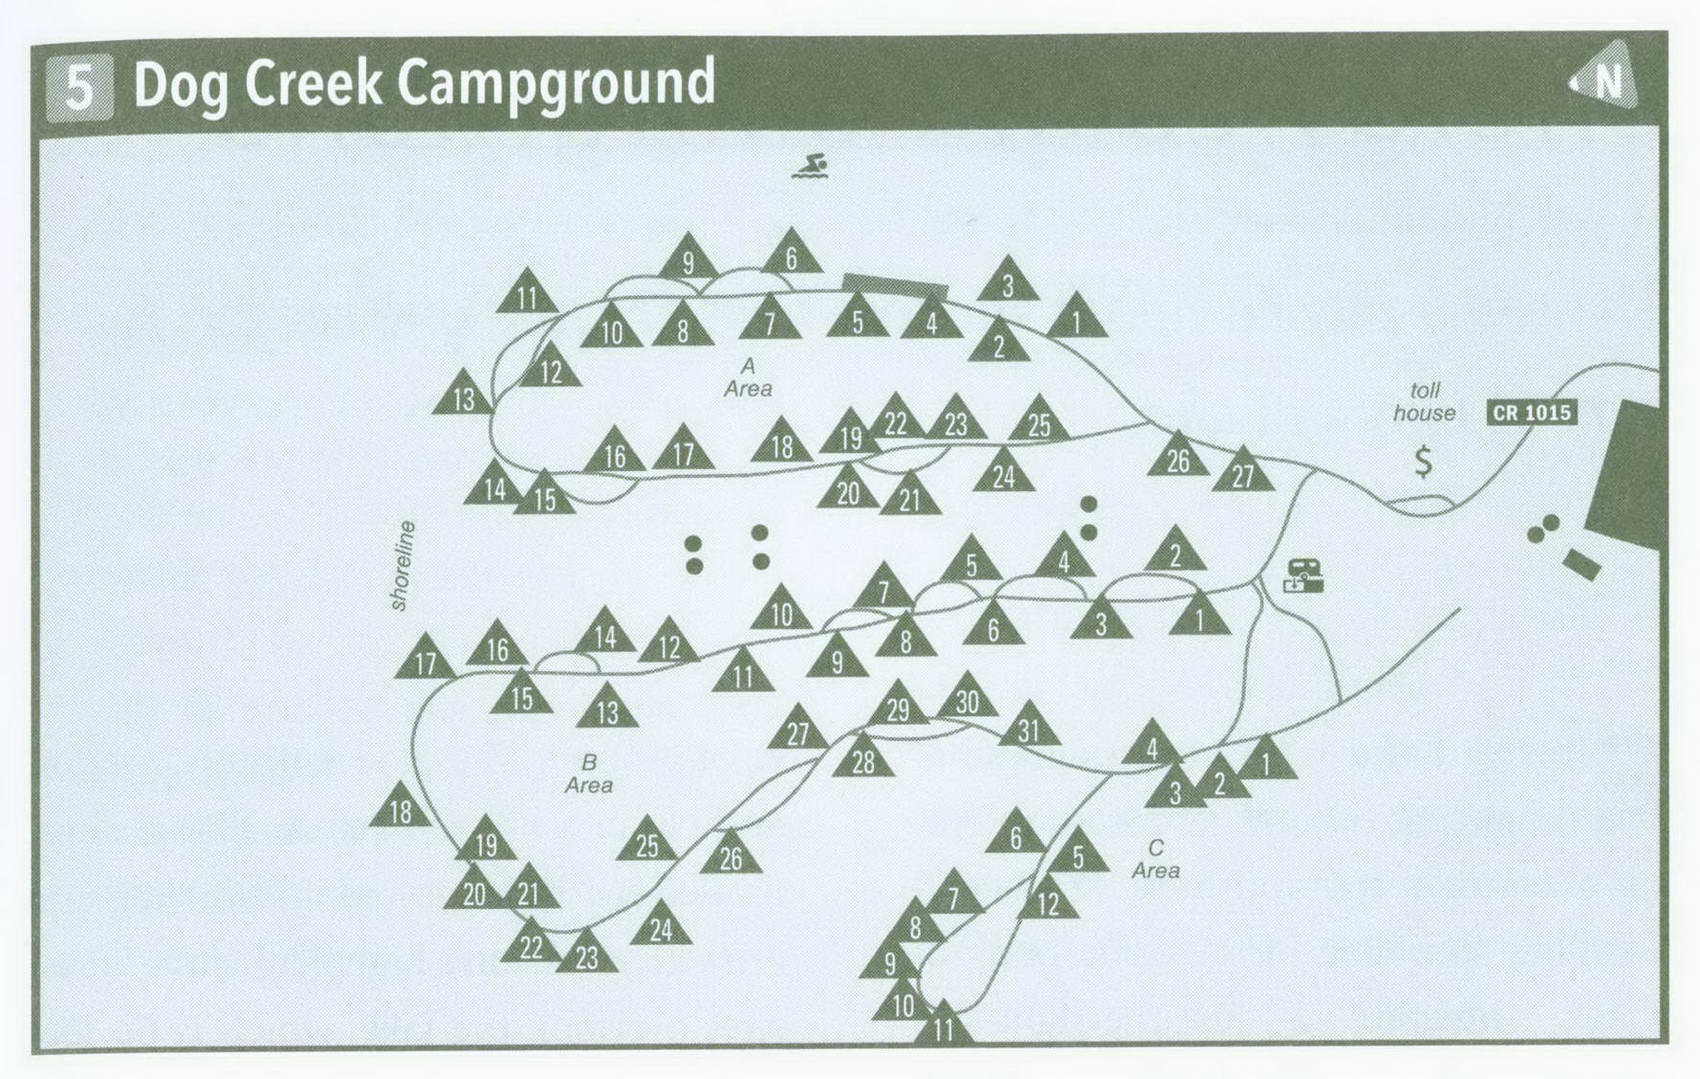 Plan of Dog Creek Campground